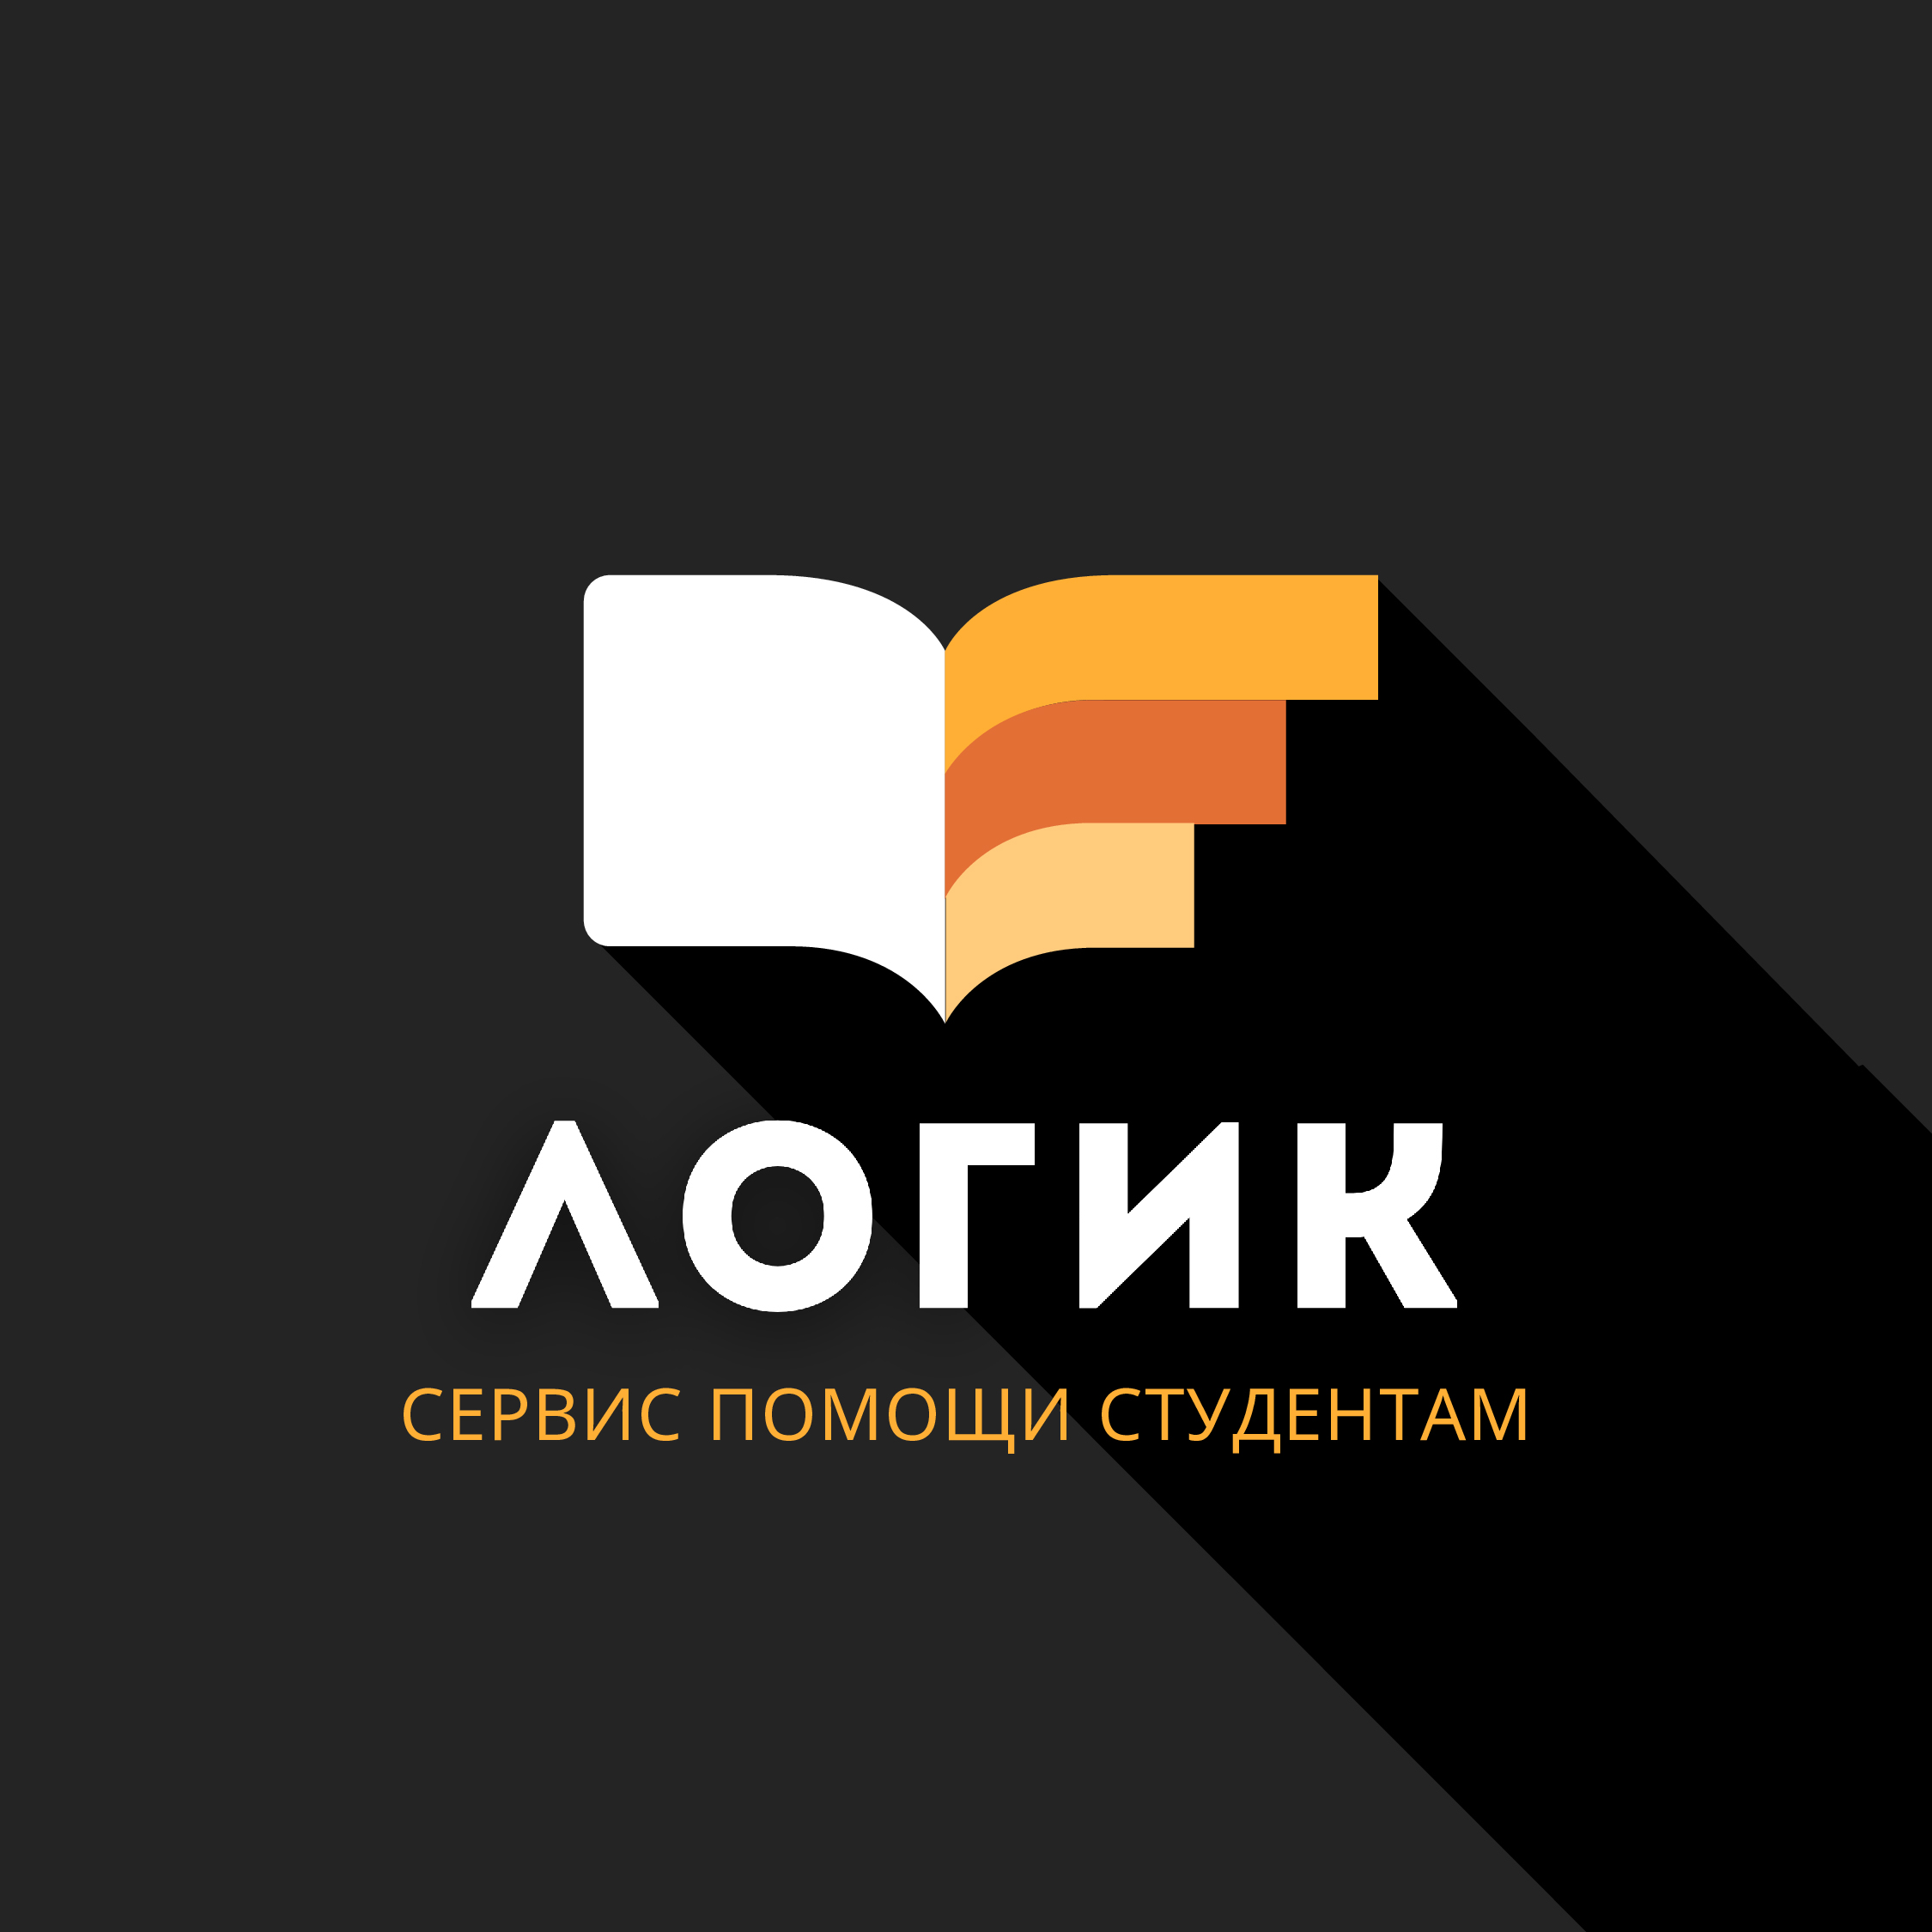 Логик — сервис помощи студентам и аспирантам в Луганске